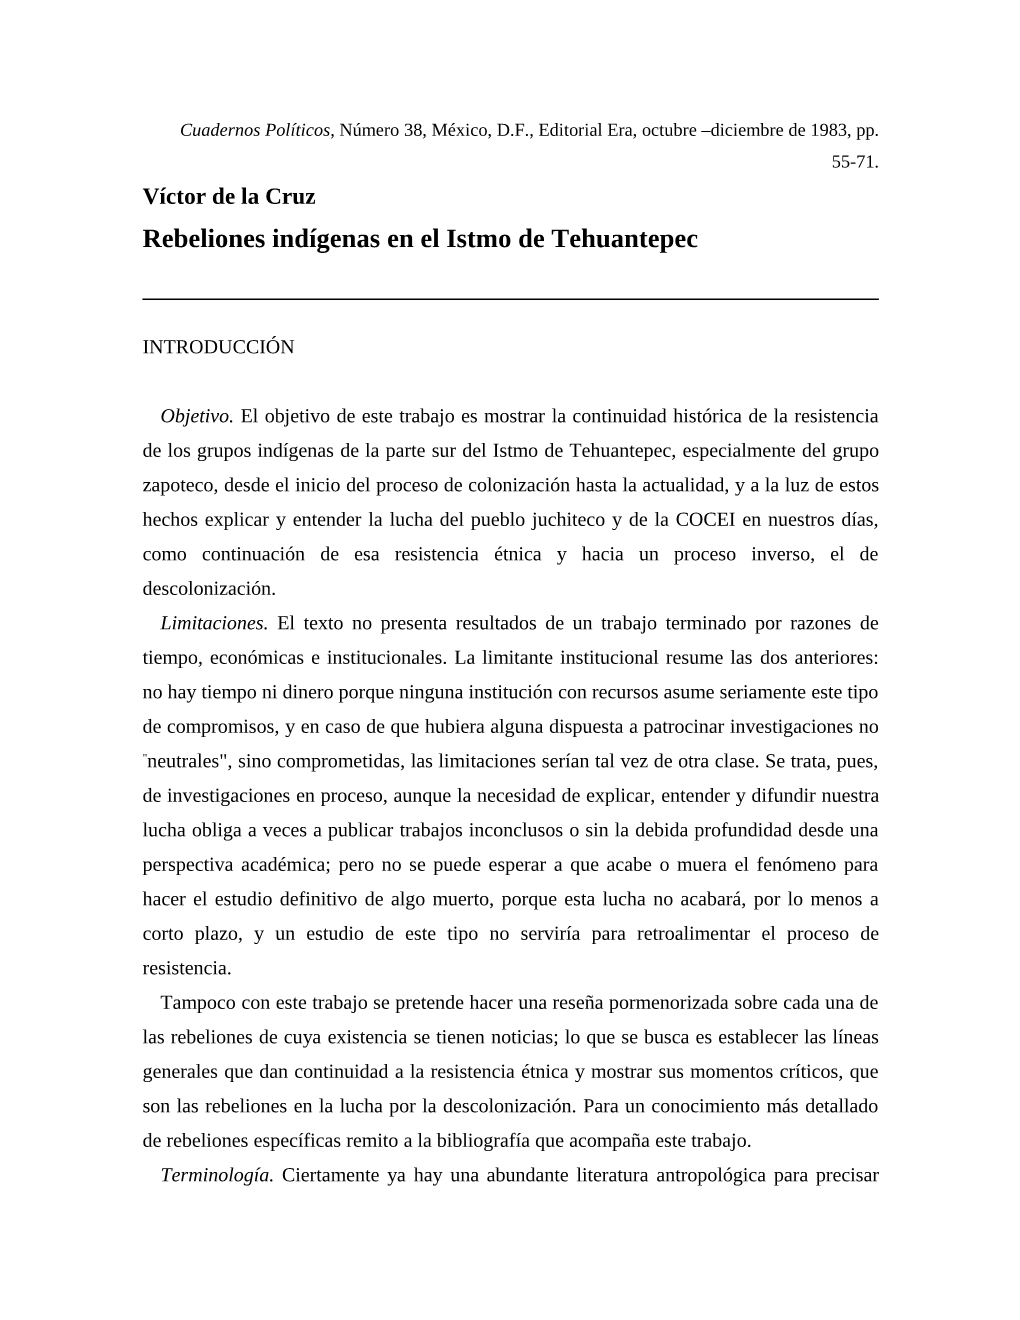 Rebeliones Indígenas En El Istmo De Tehuantepec